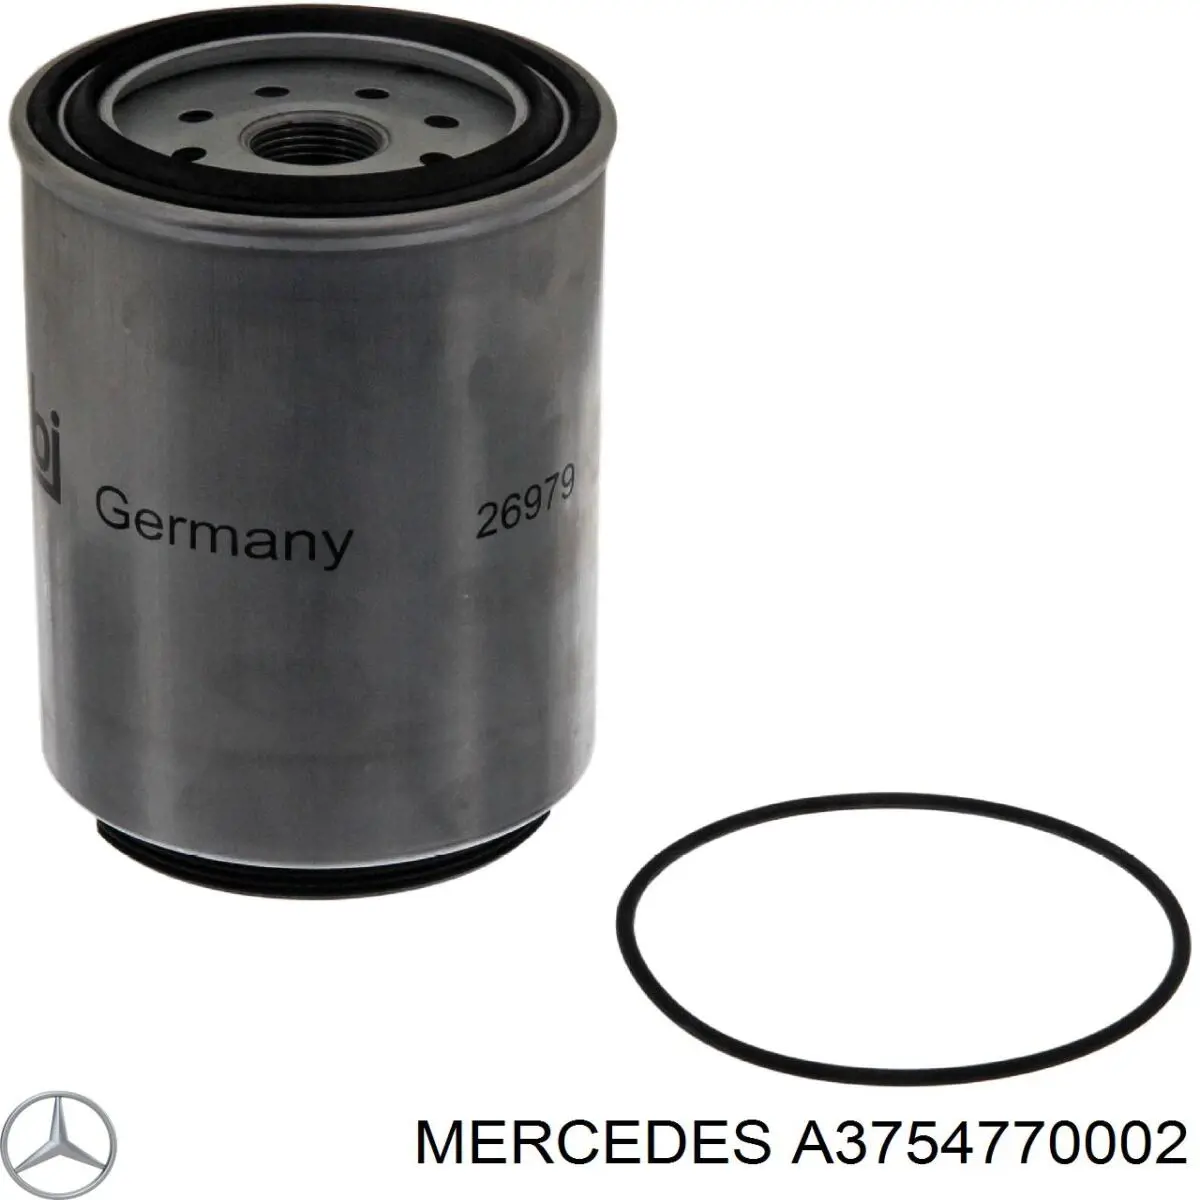 A3754770002 Mercedes filtro combustible